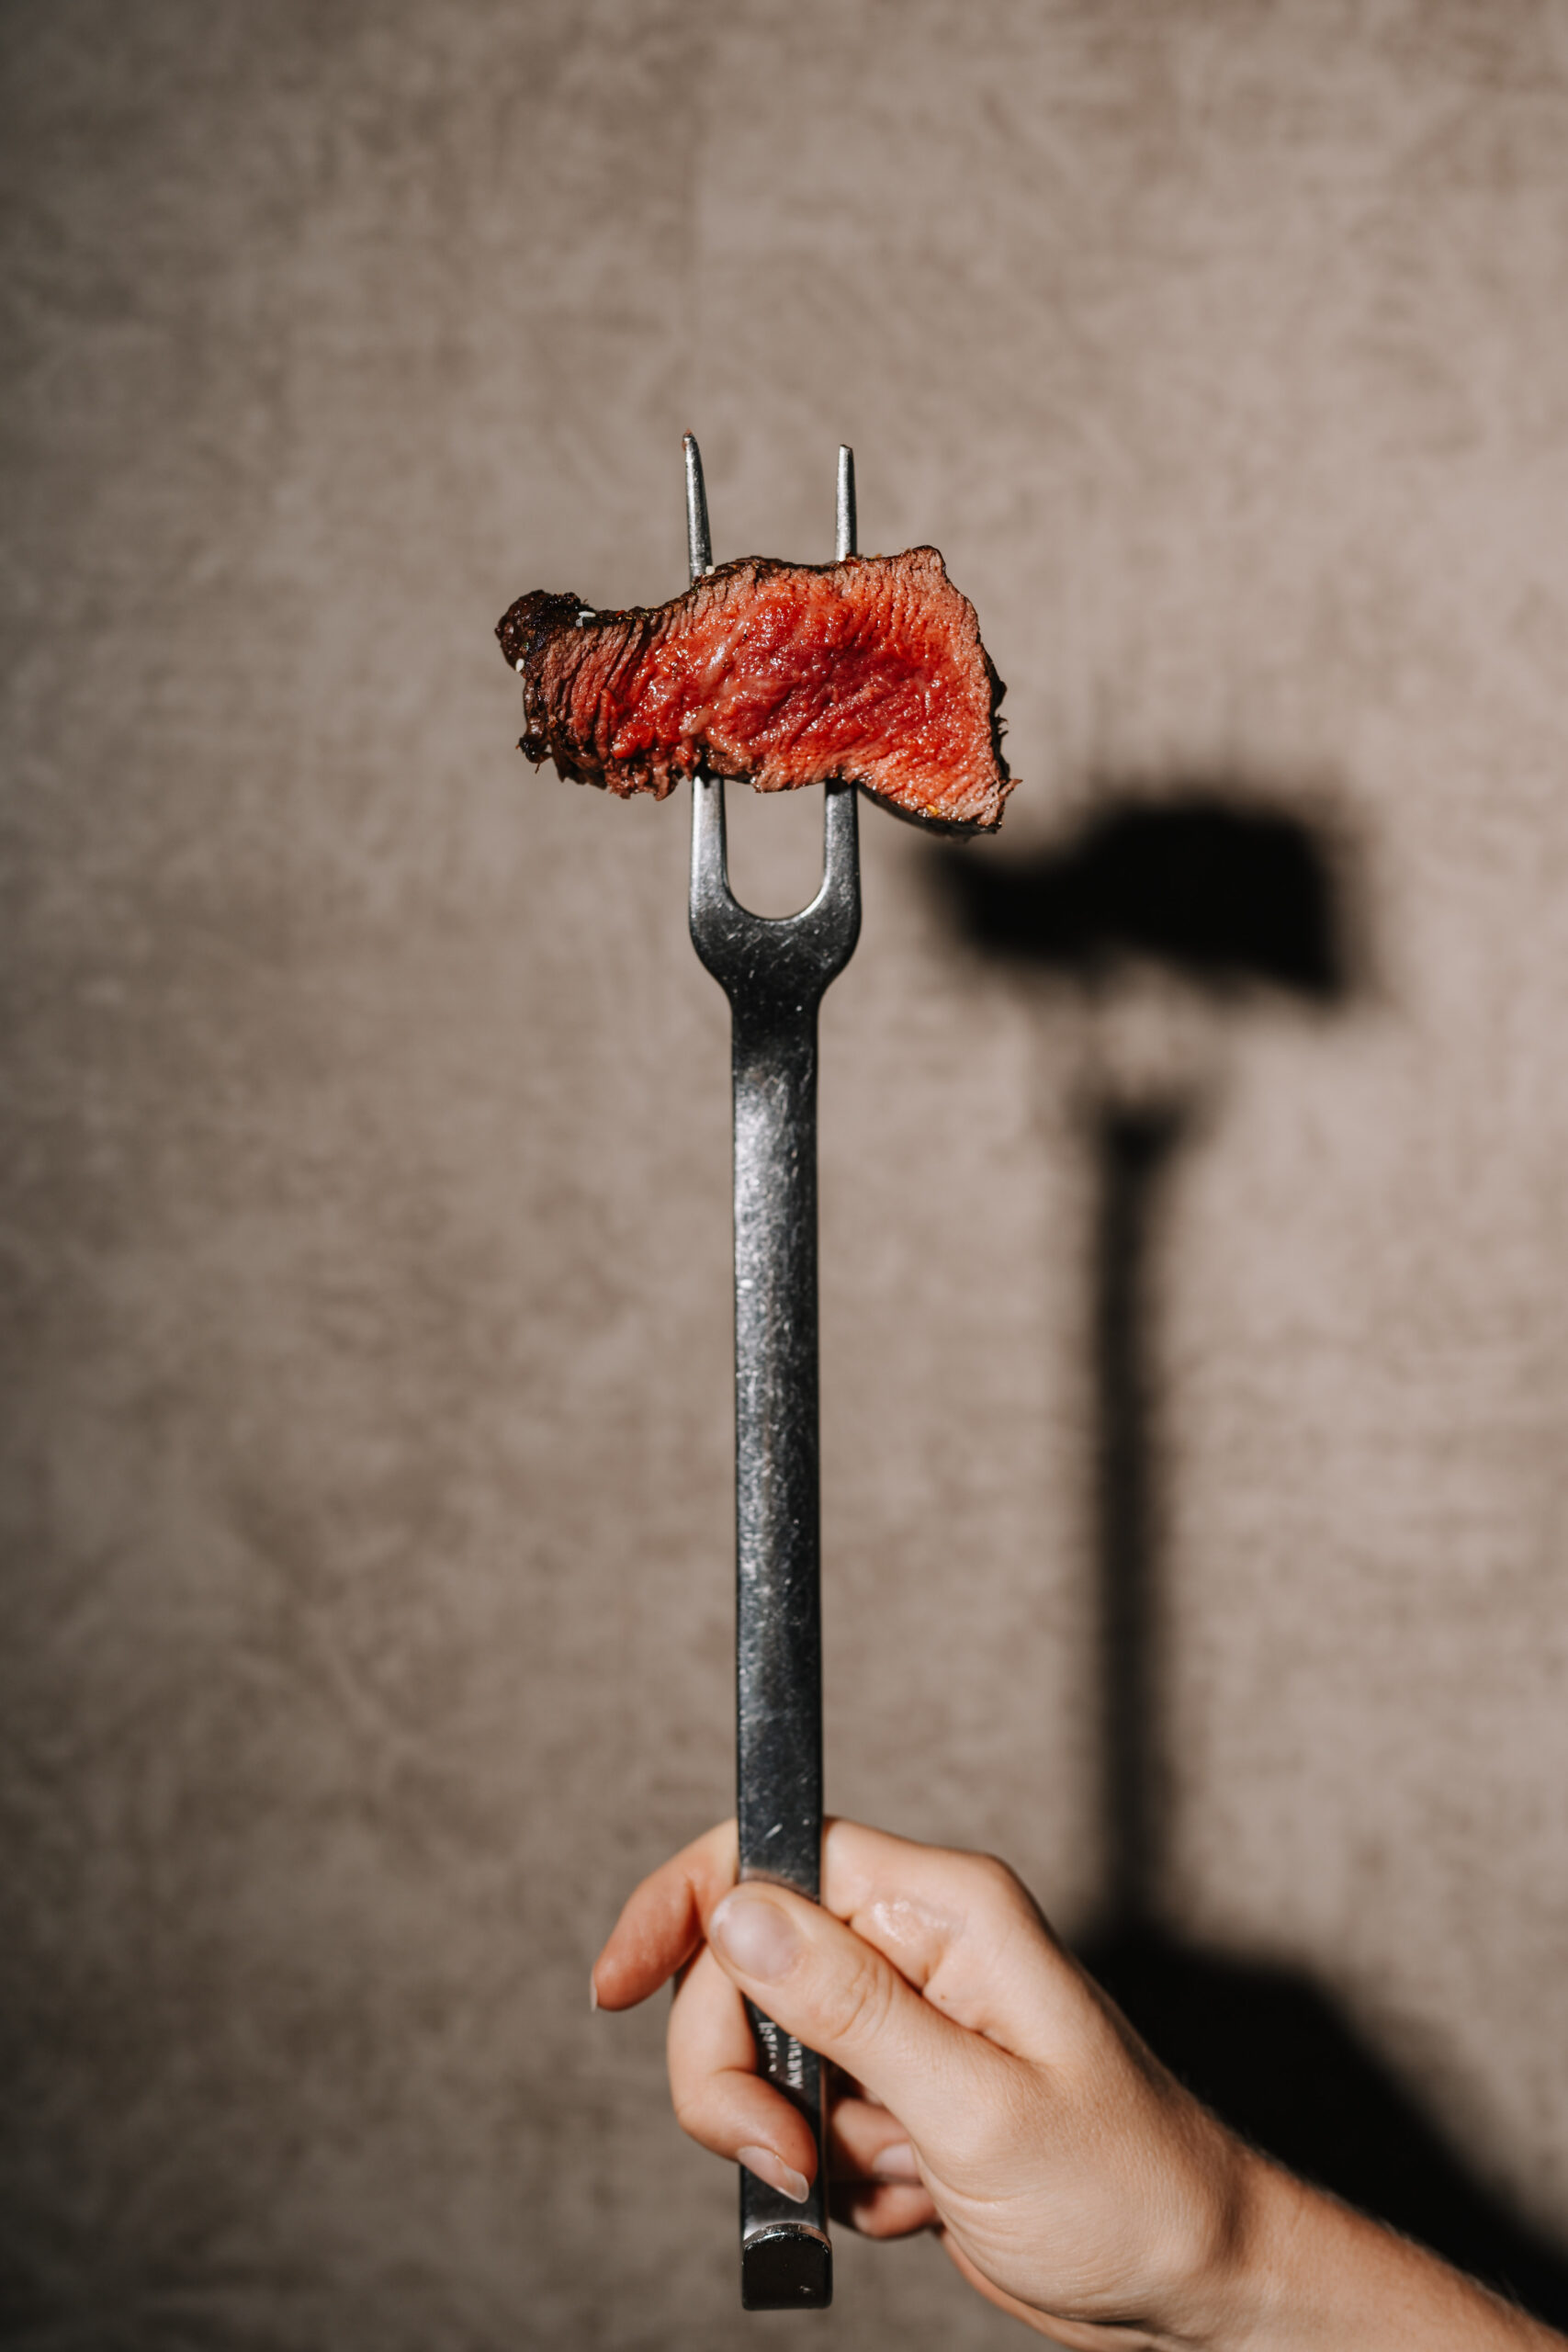 Blutiges Steak as Spezialität des Restaurants